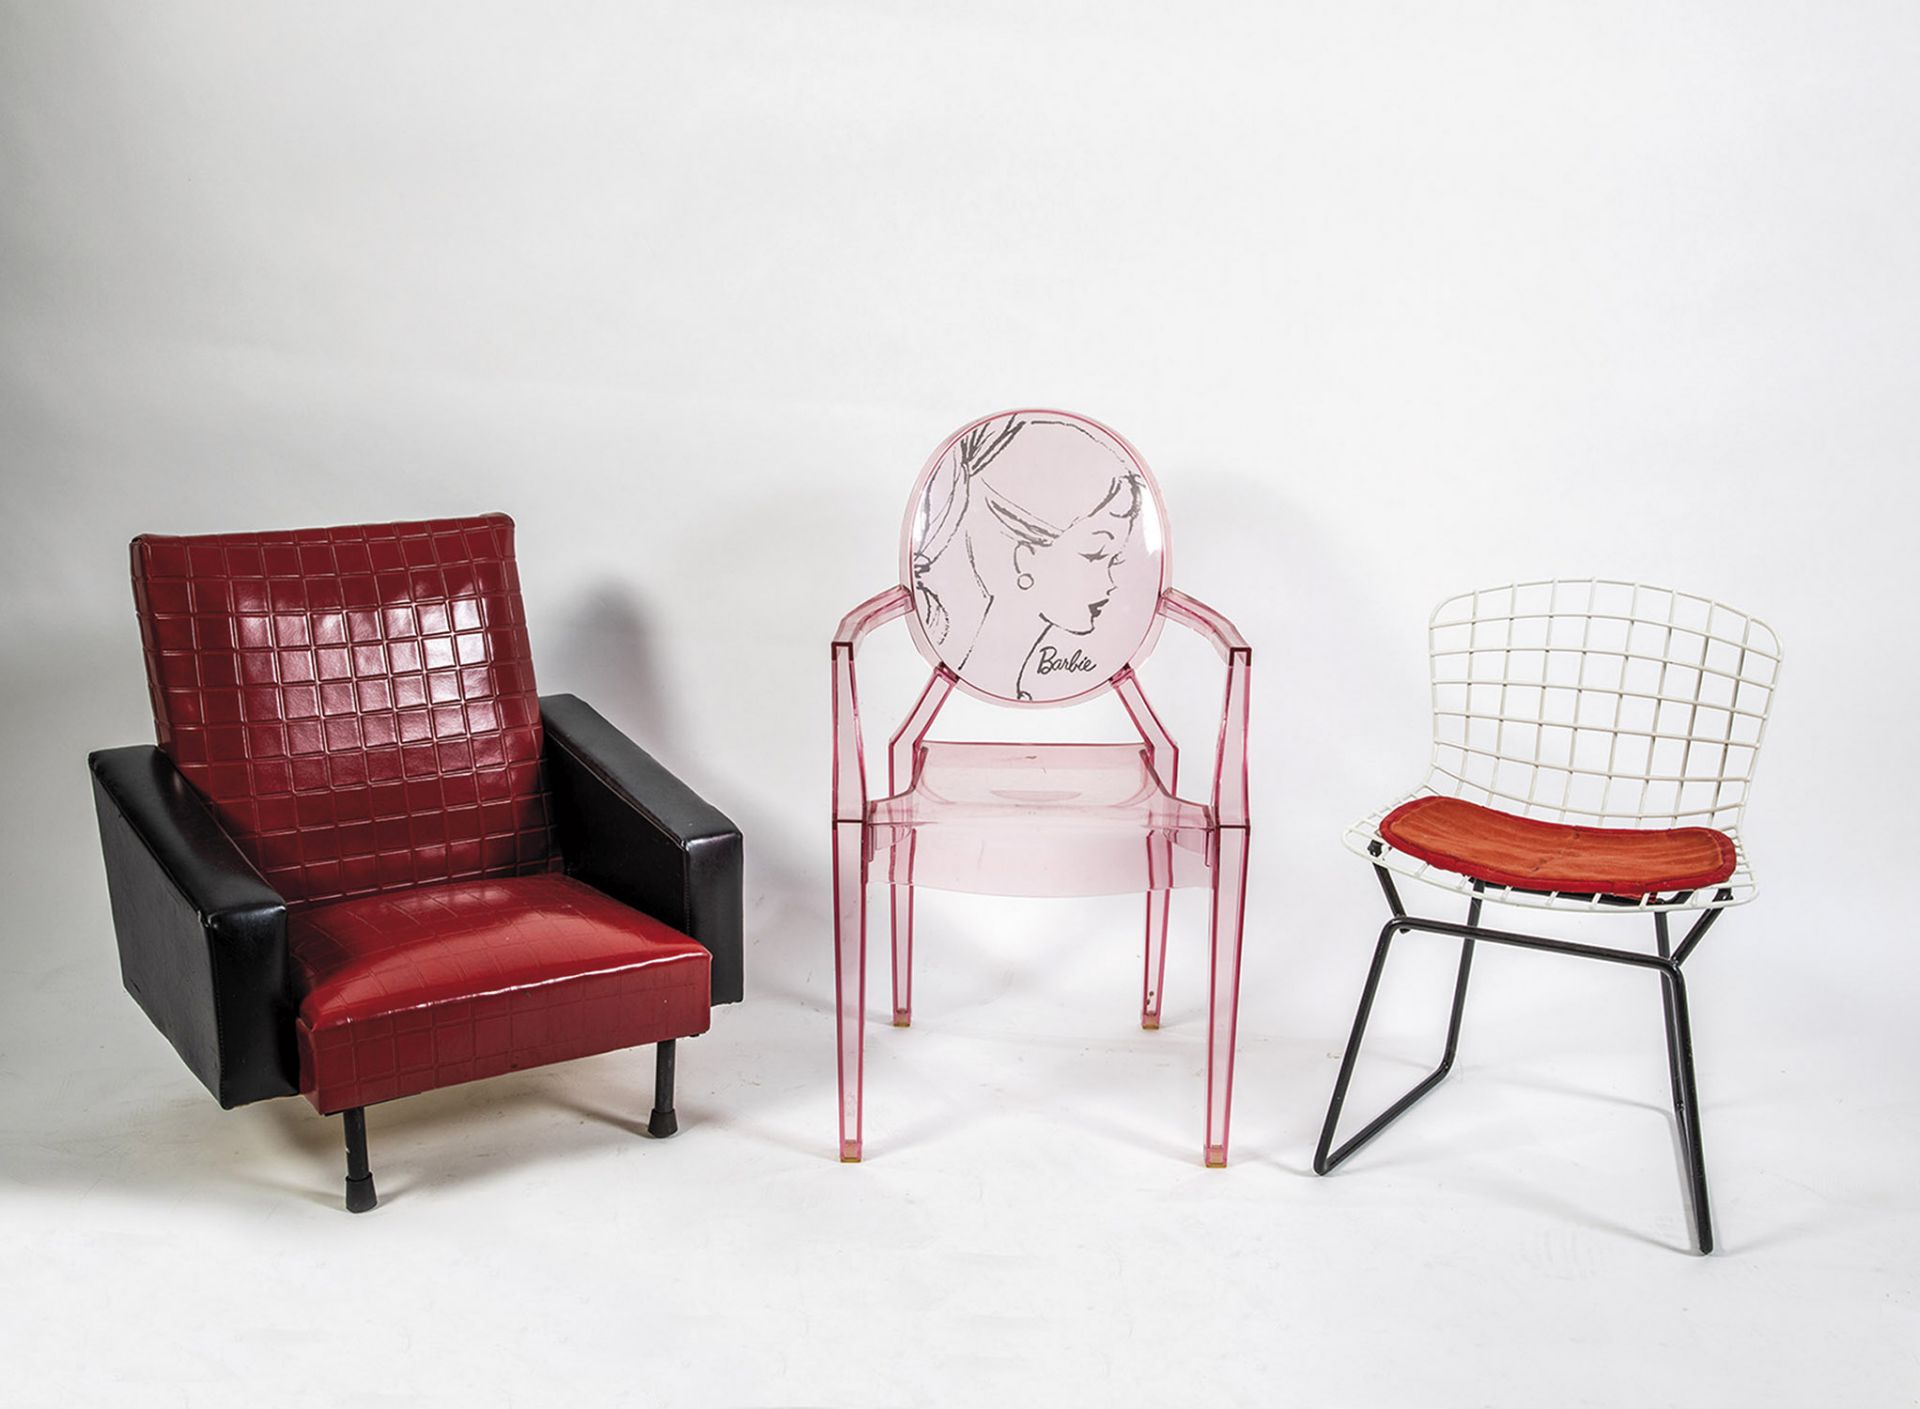 Three designer children's chairs